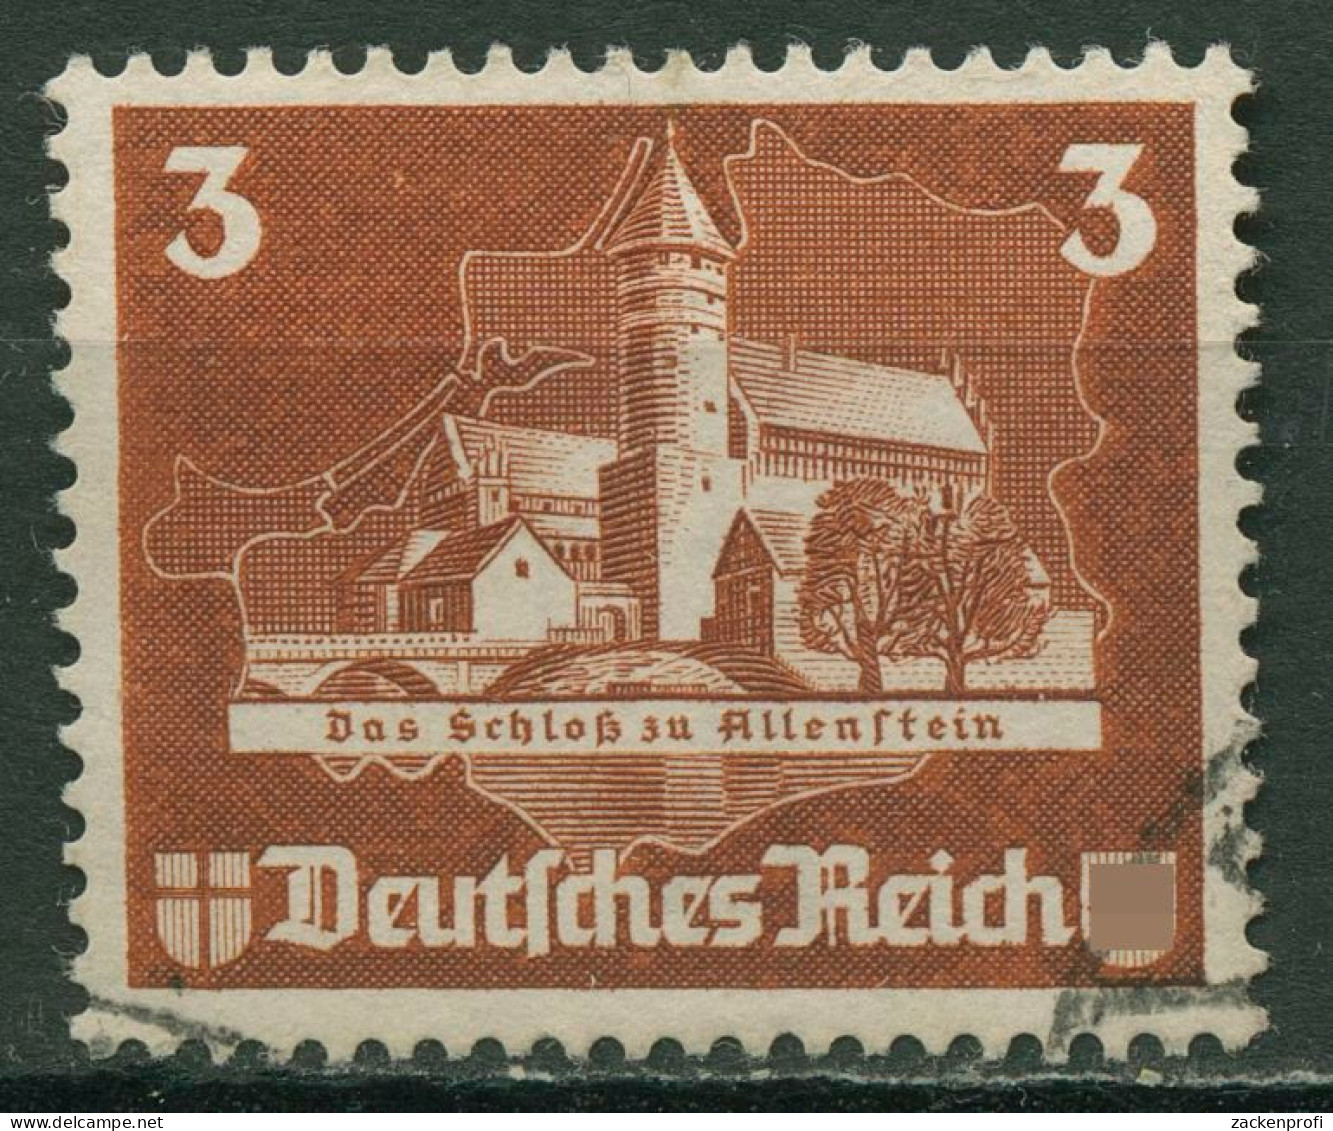 Deutsches Reich 1935 Einzelmarke Aus OSTROPA-Block 576 Gestempelt - Oblitérés